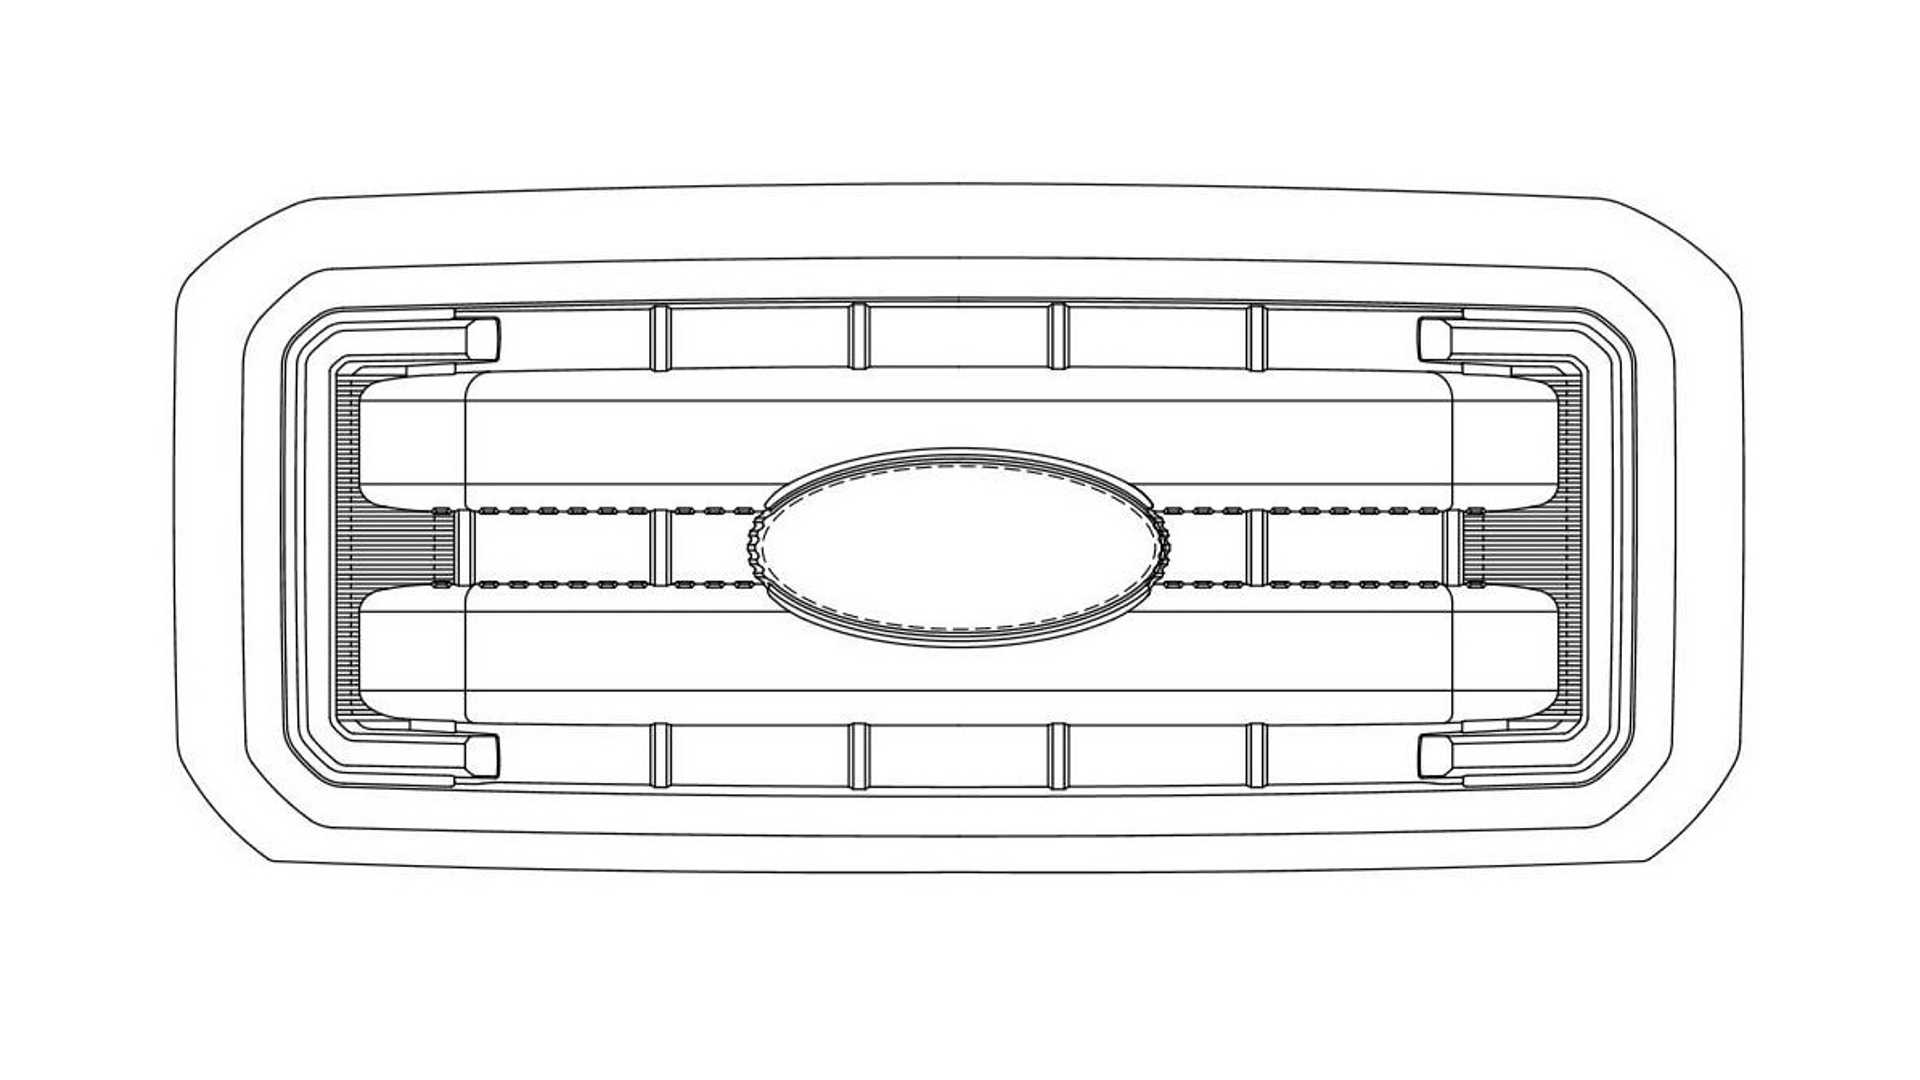 فورد تسجل براءة اختراع لأربع تصاميم جديدة للشبك الأمامي 16